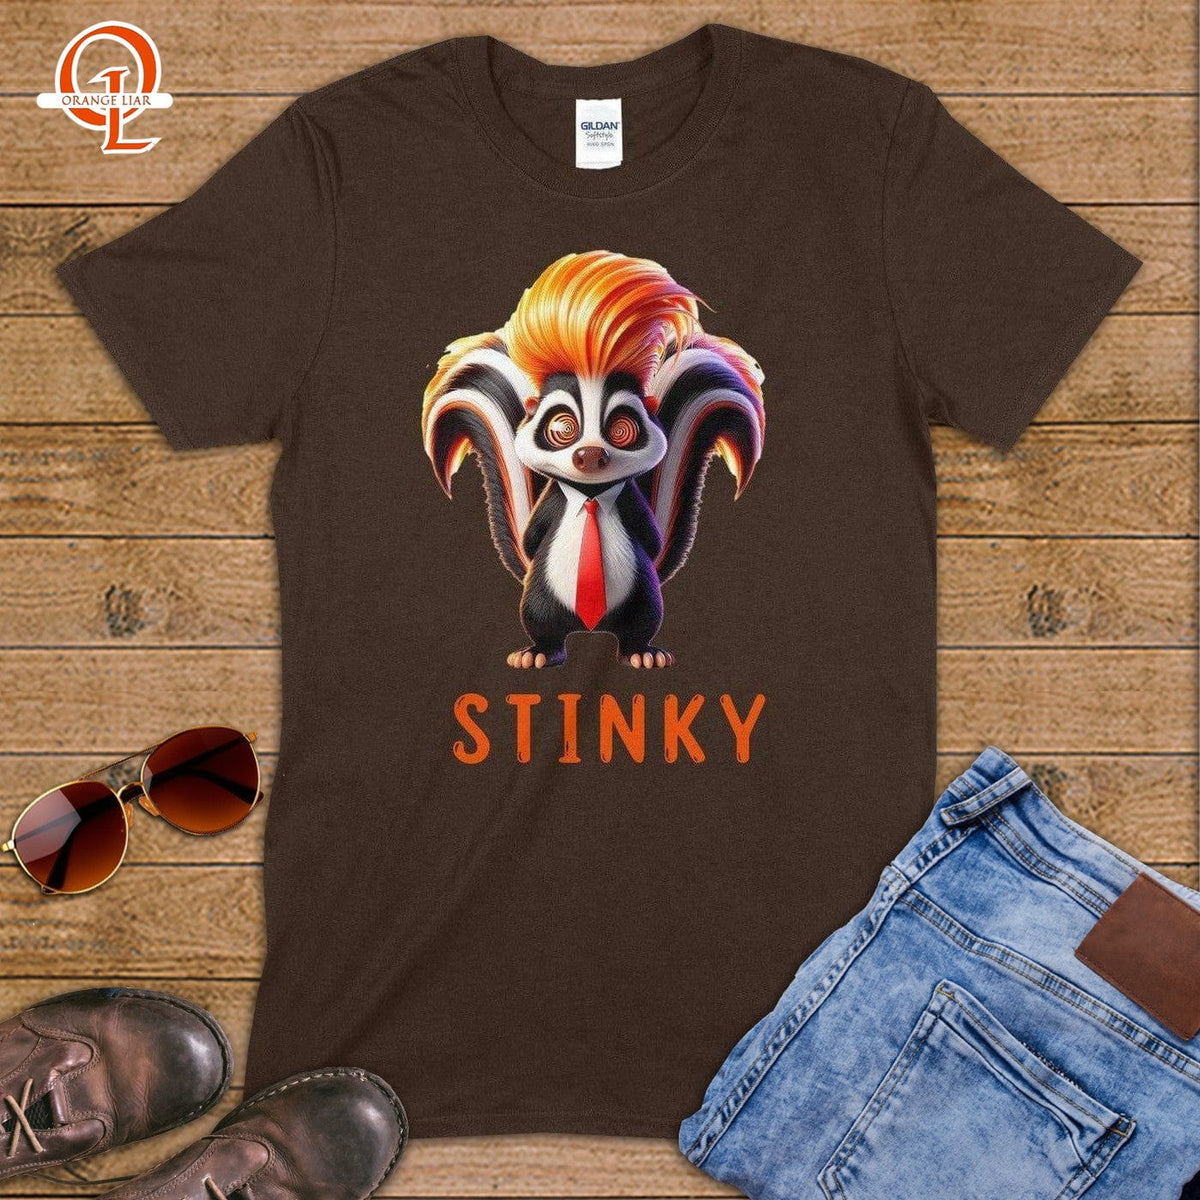 Stinky ~ T-Shirt-Orange Liar